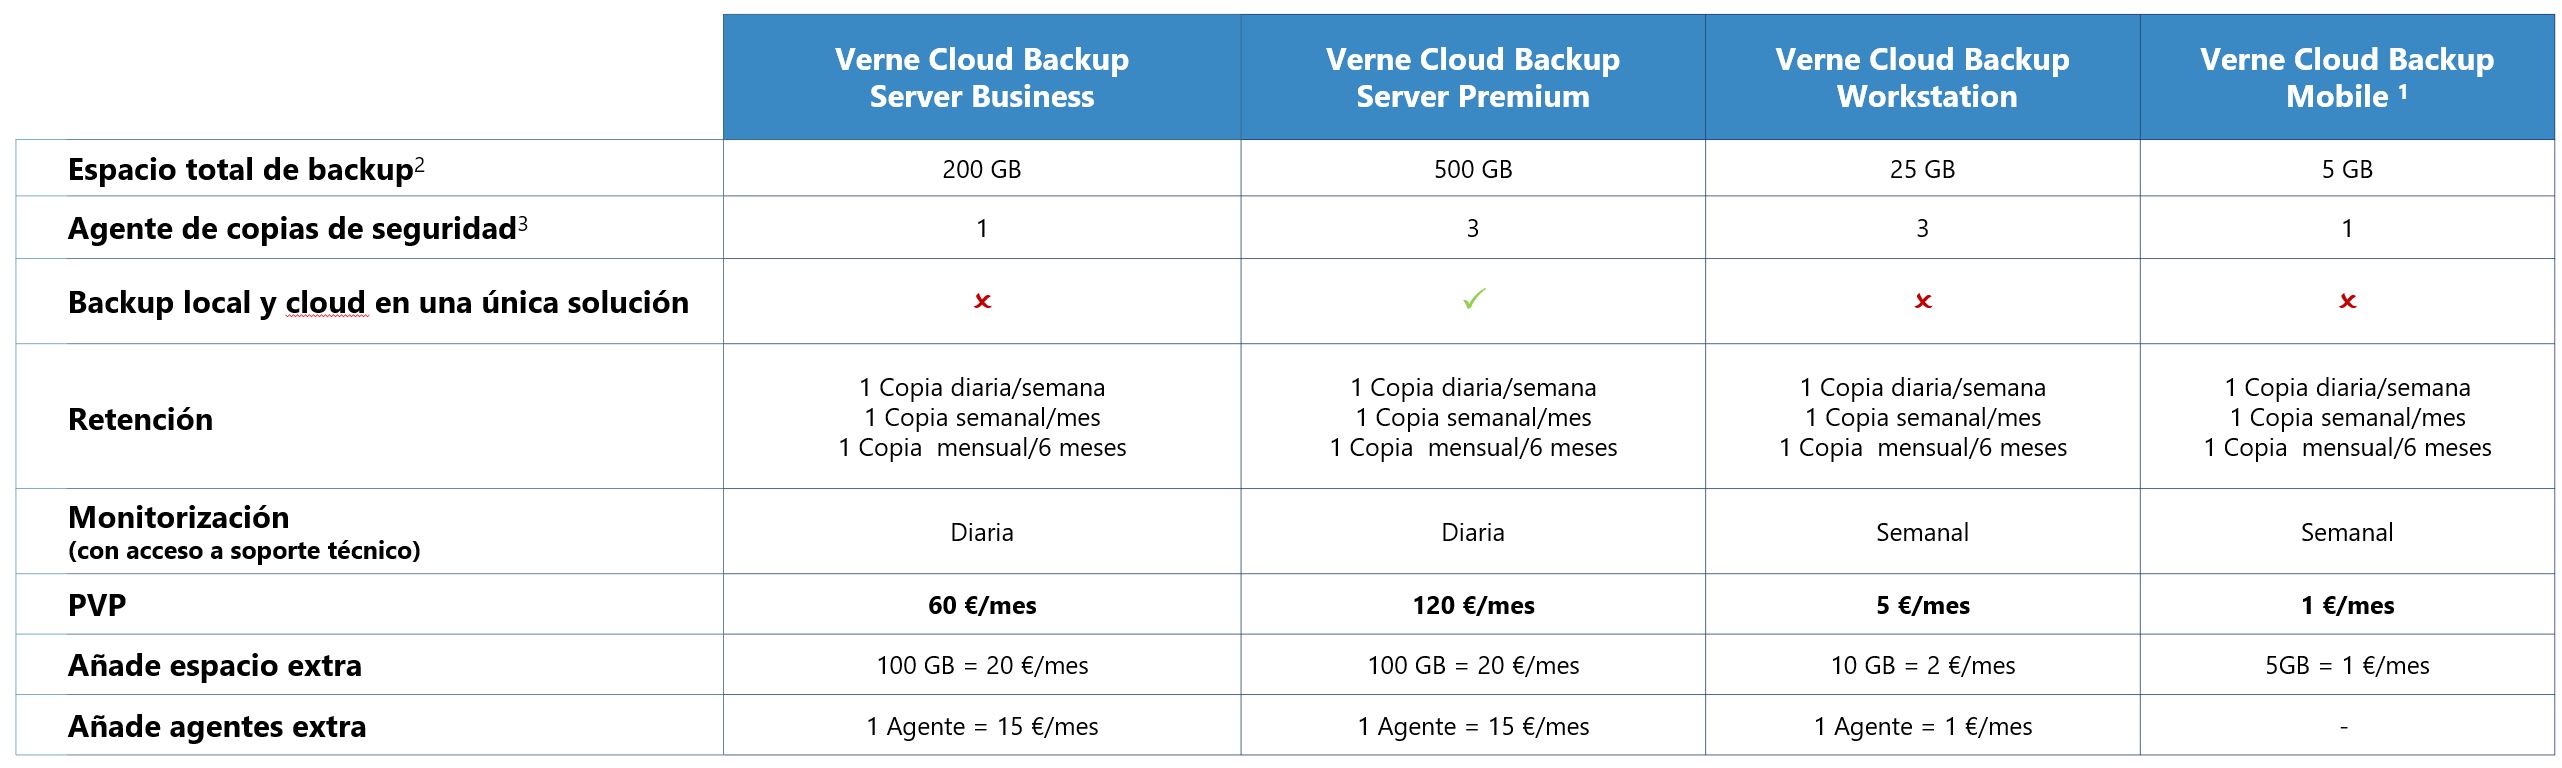 Verne Cloud Backup